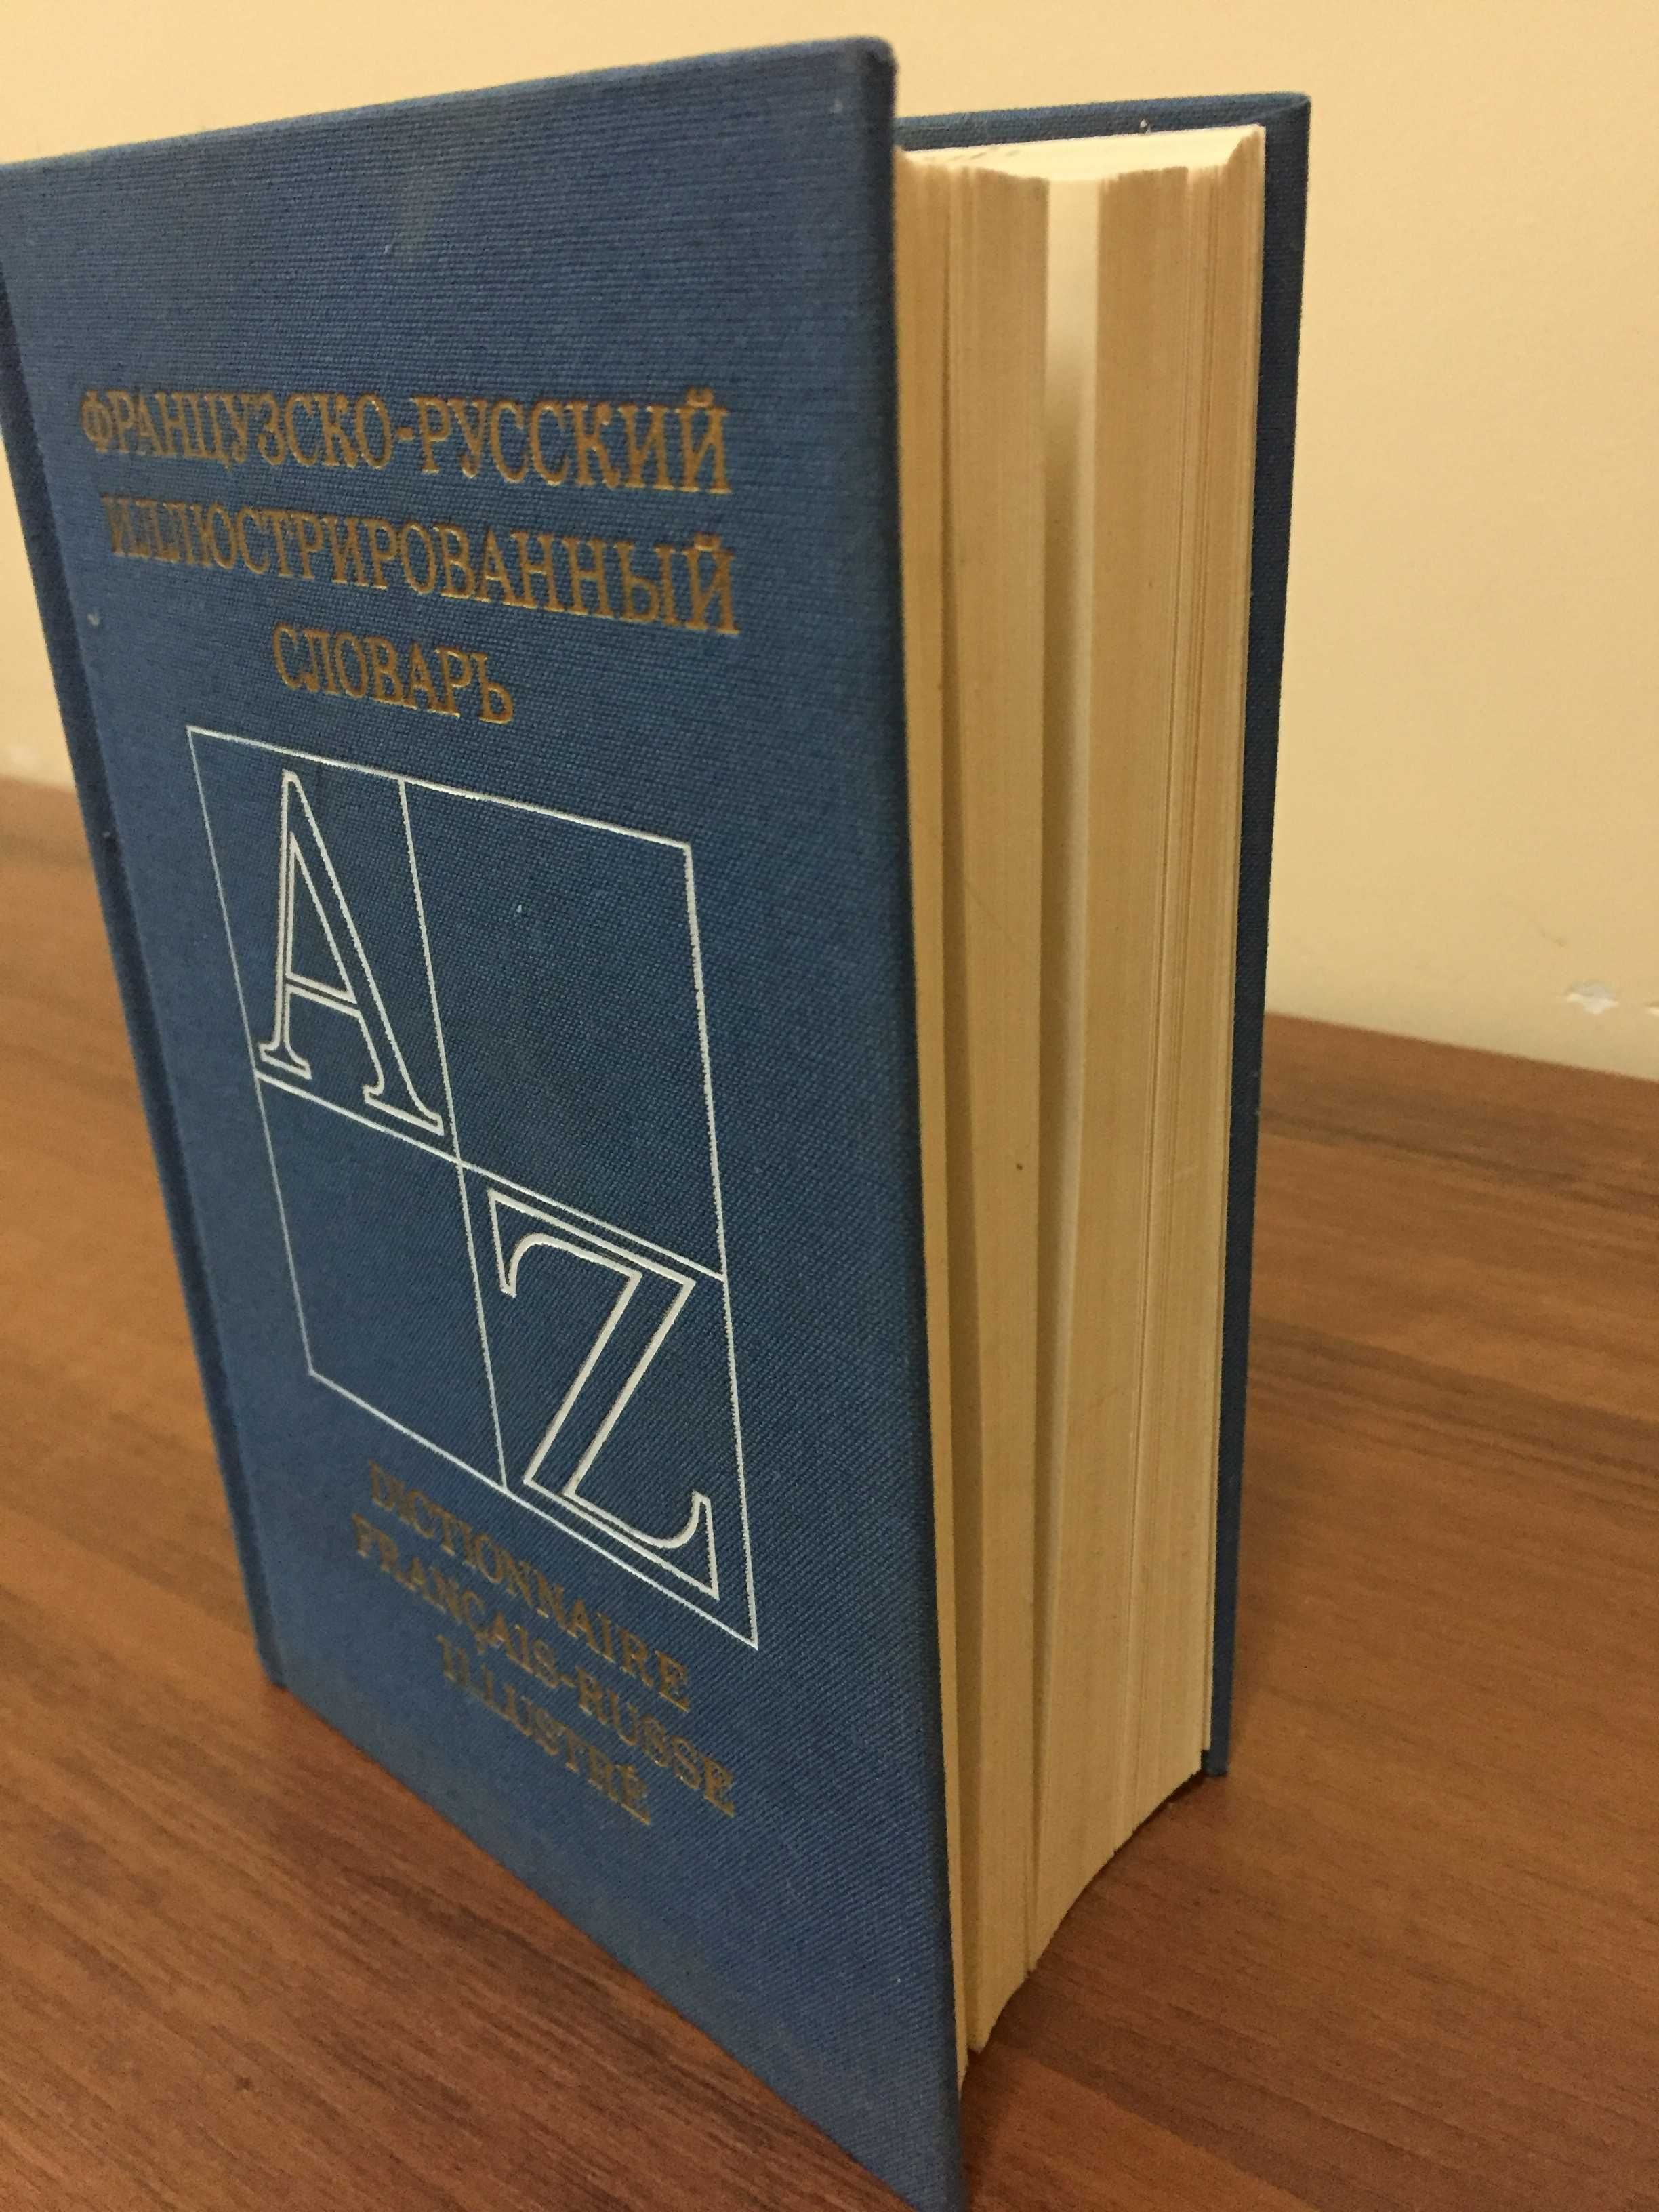 Иллюстрированный французско-русский словарь.